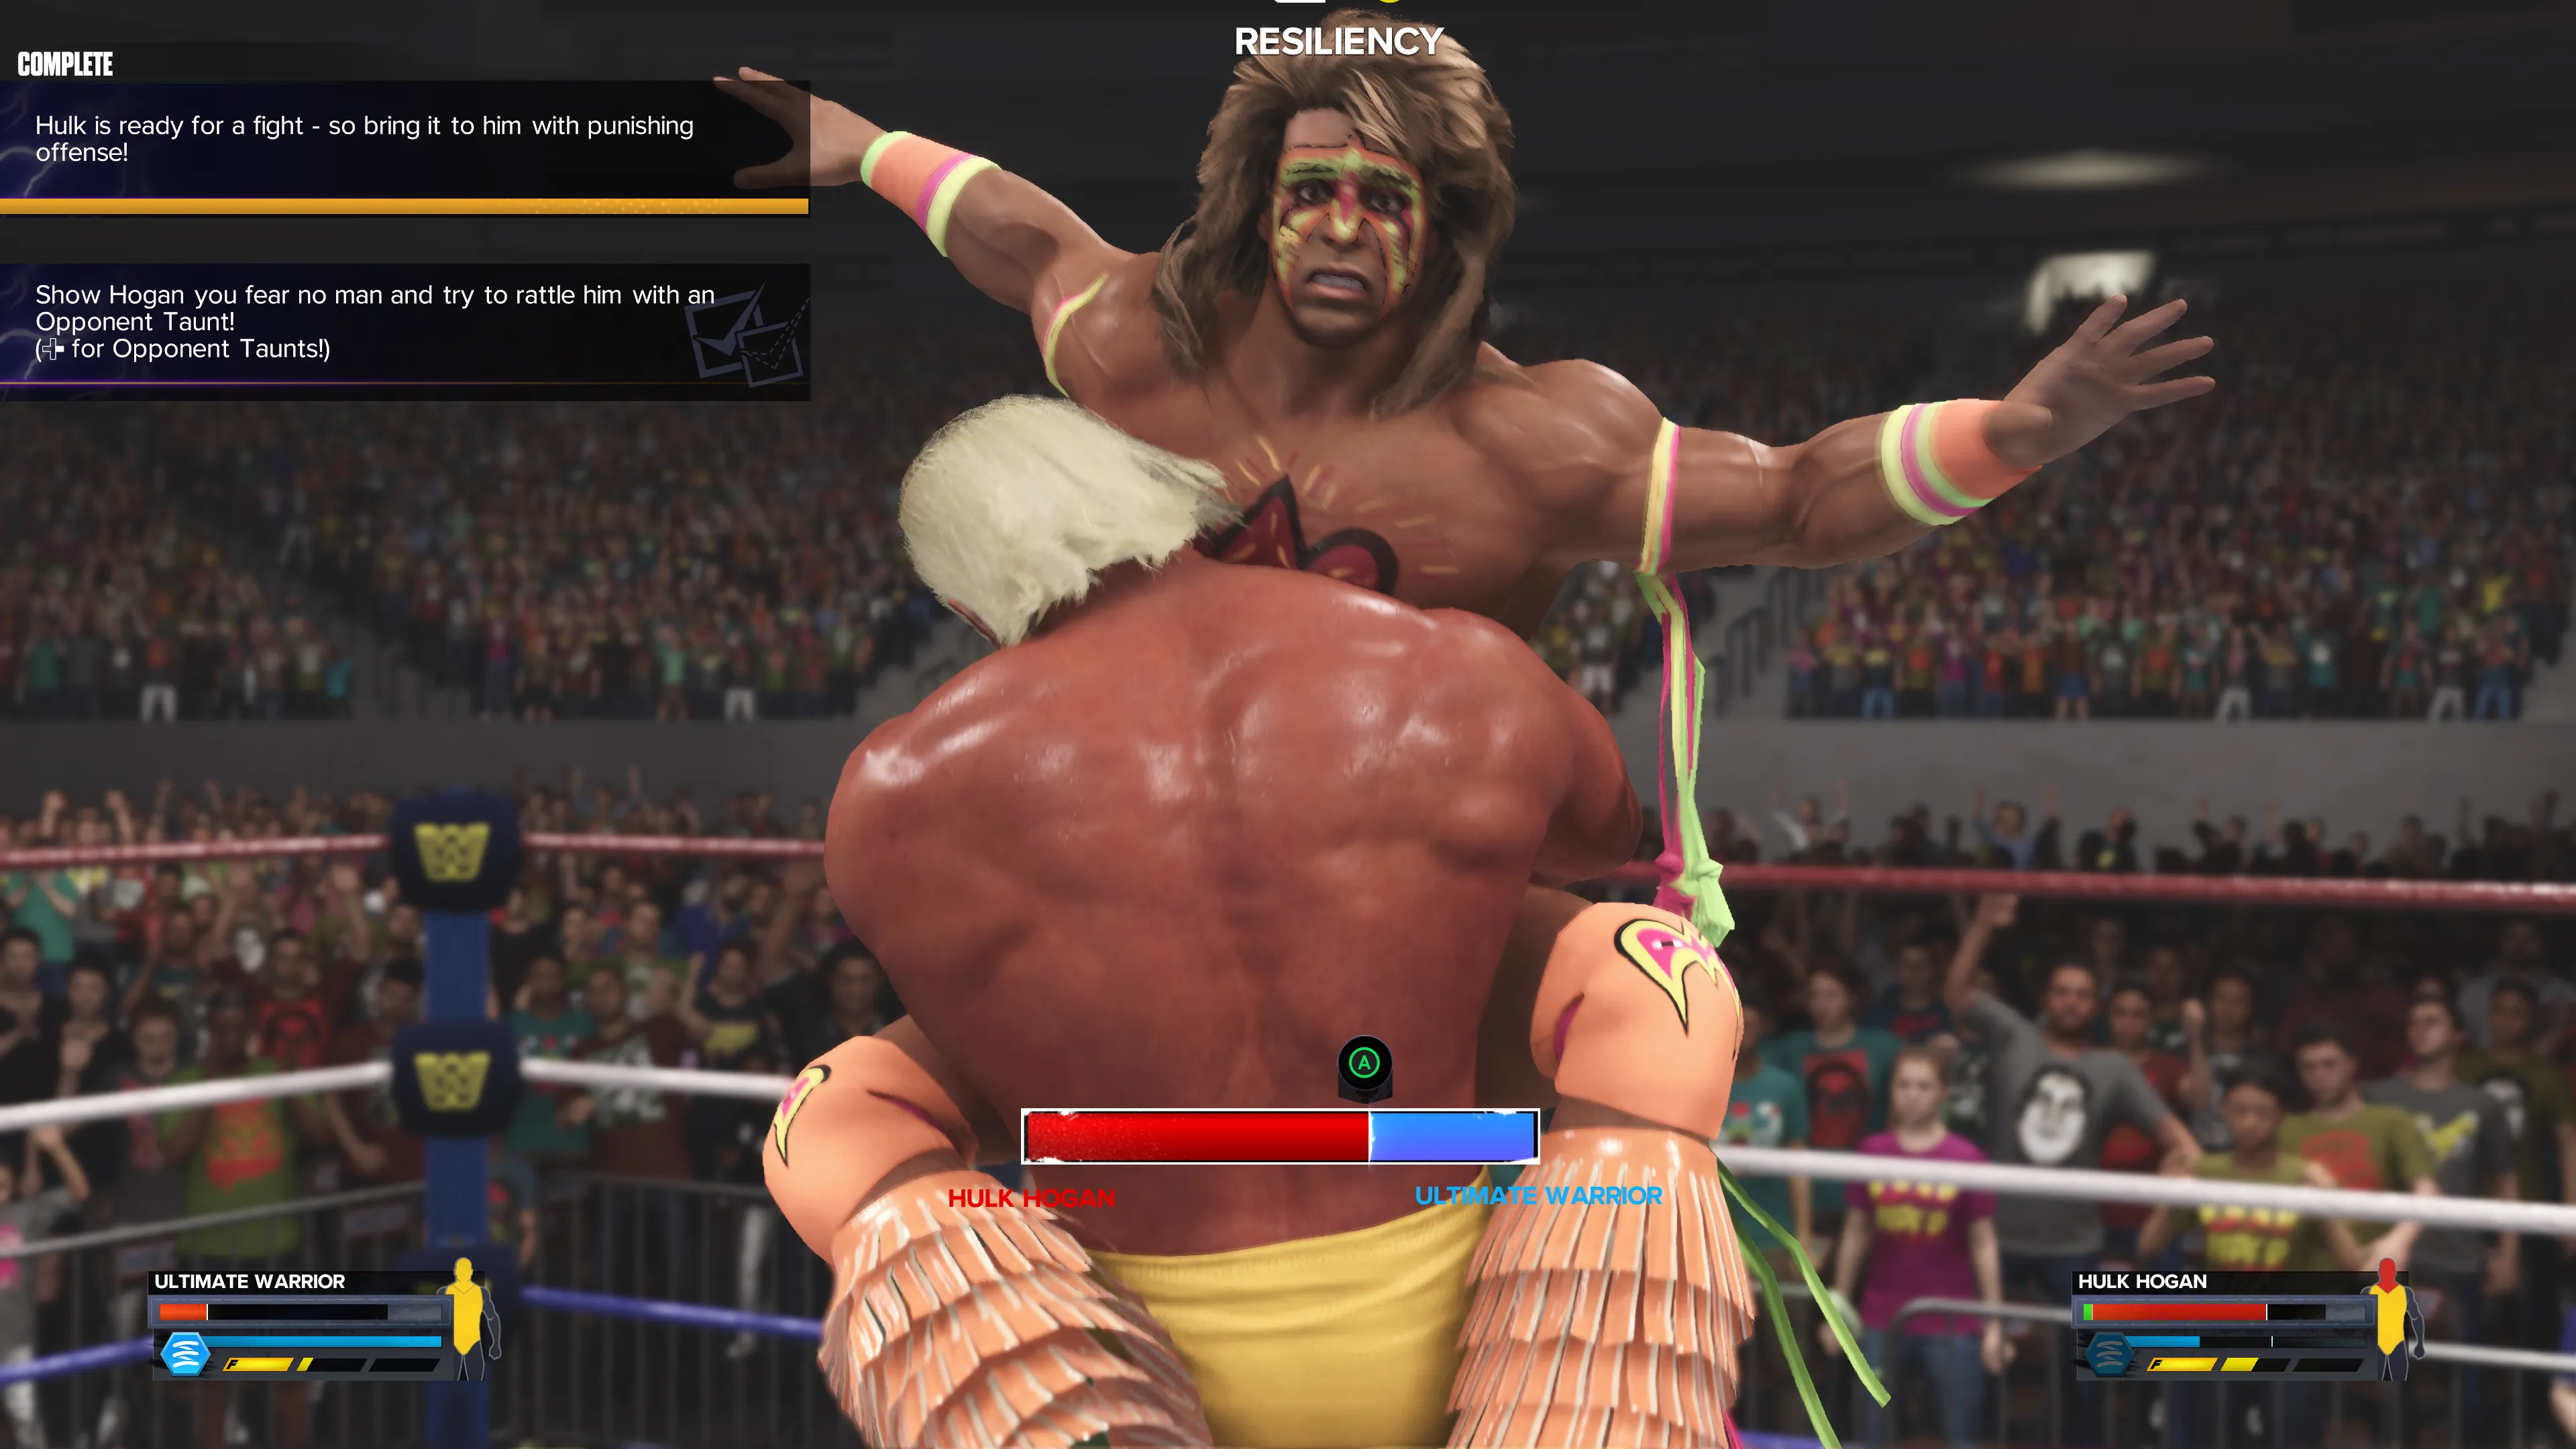 Hulk Hogan retient The Ultimate Warrior dans une prise de soumission